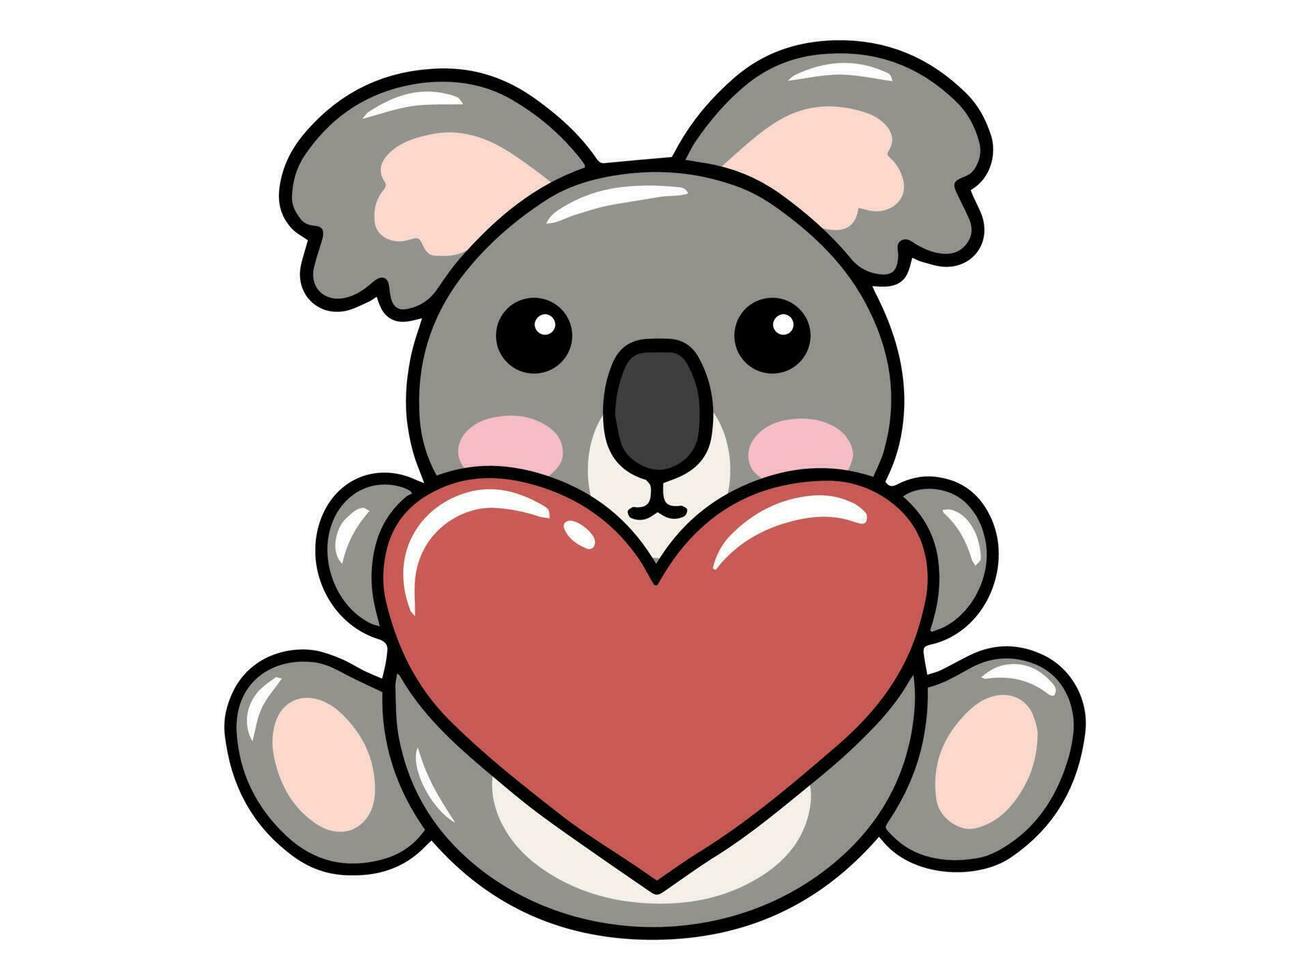 Cute cartoon Koala drawing illustration vector